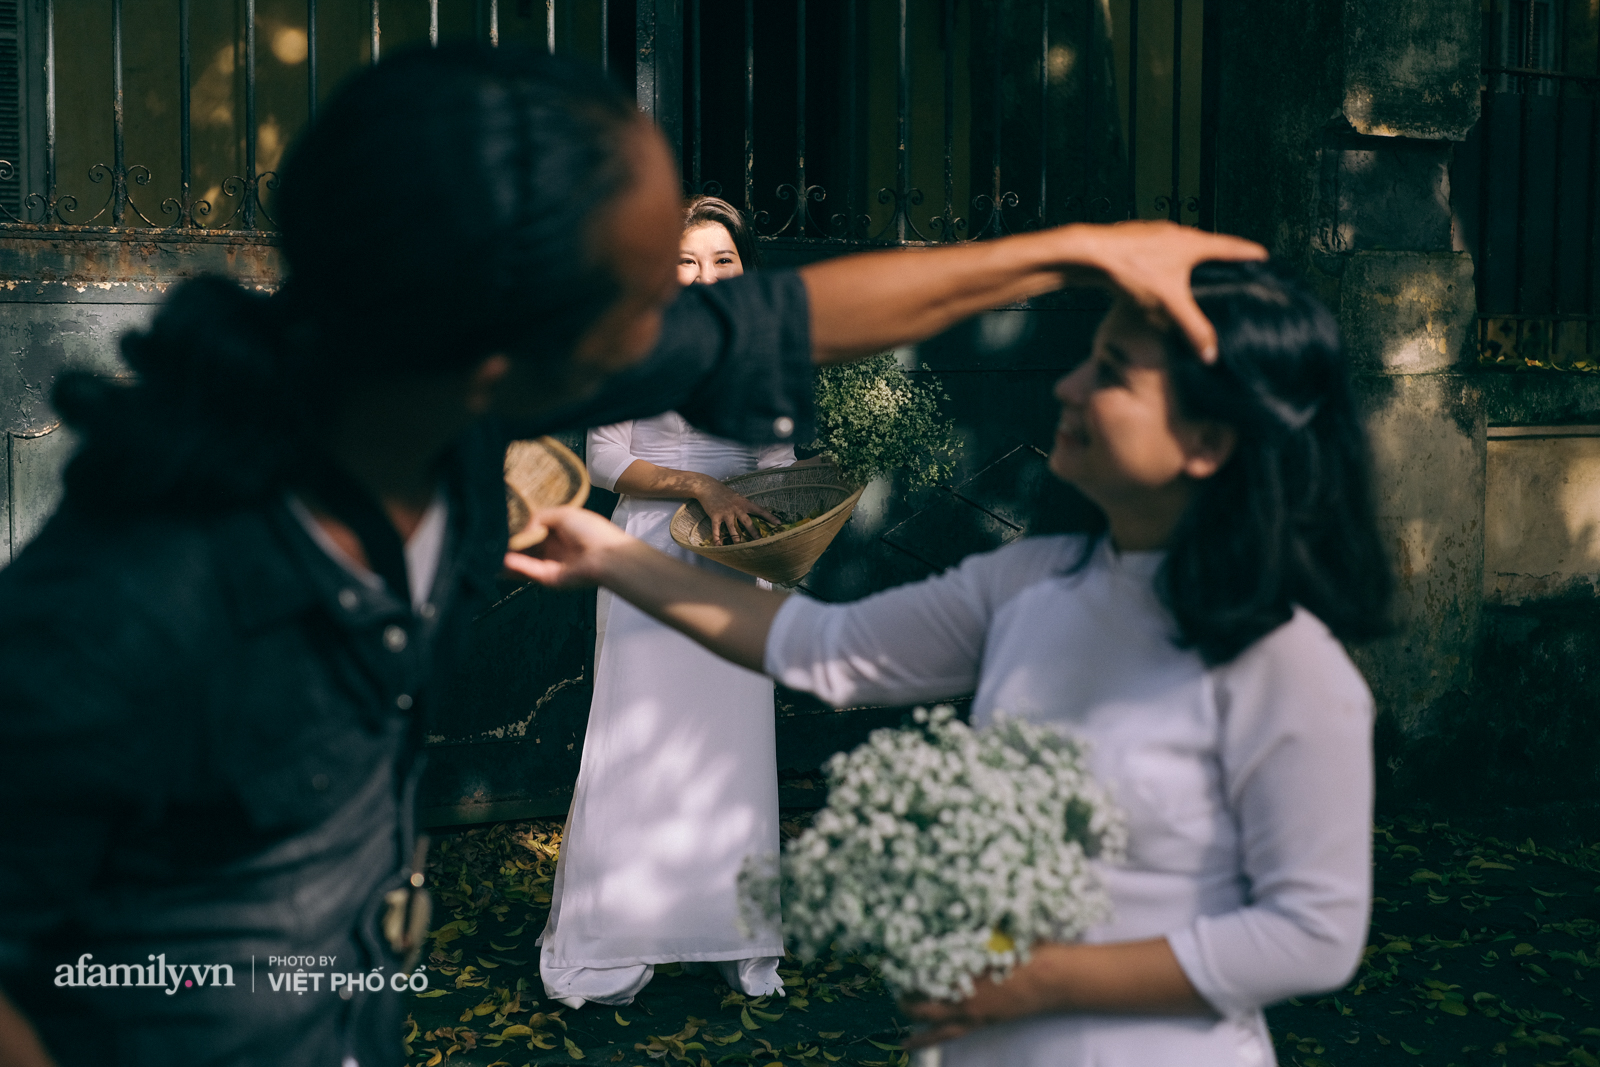 Nhọc nhằn nghề chụp ảnh cho các chị em với lá vàng rơi trên phố - Ảnh 10.